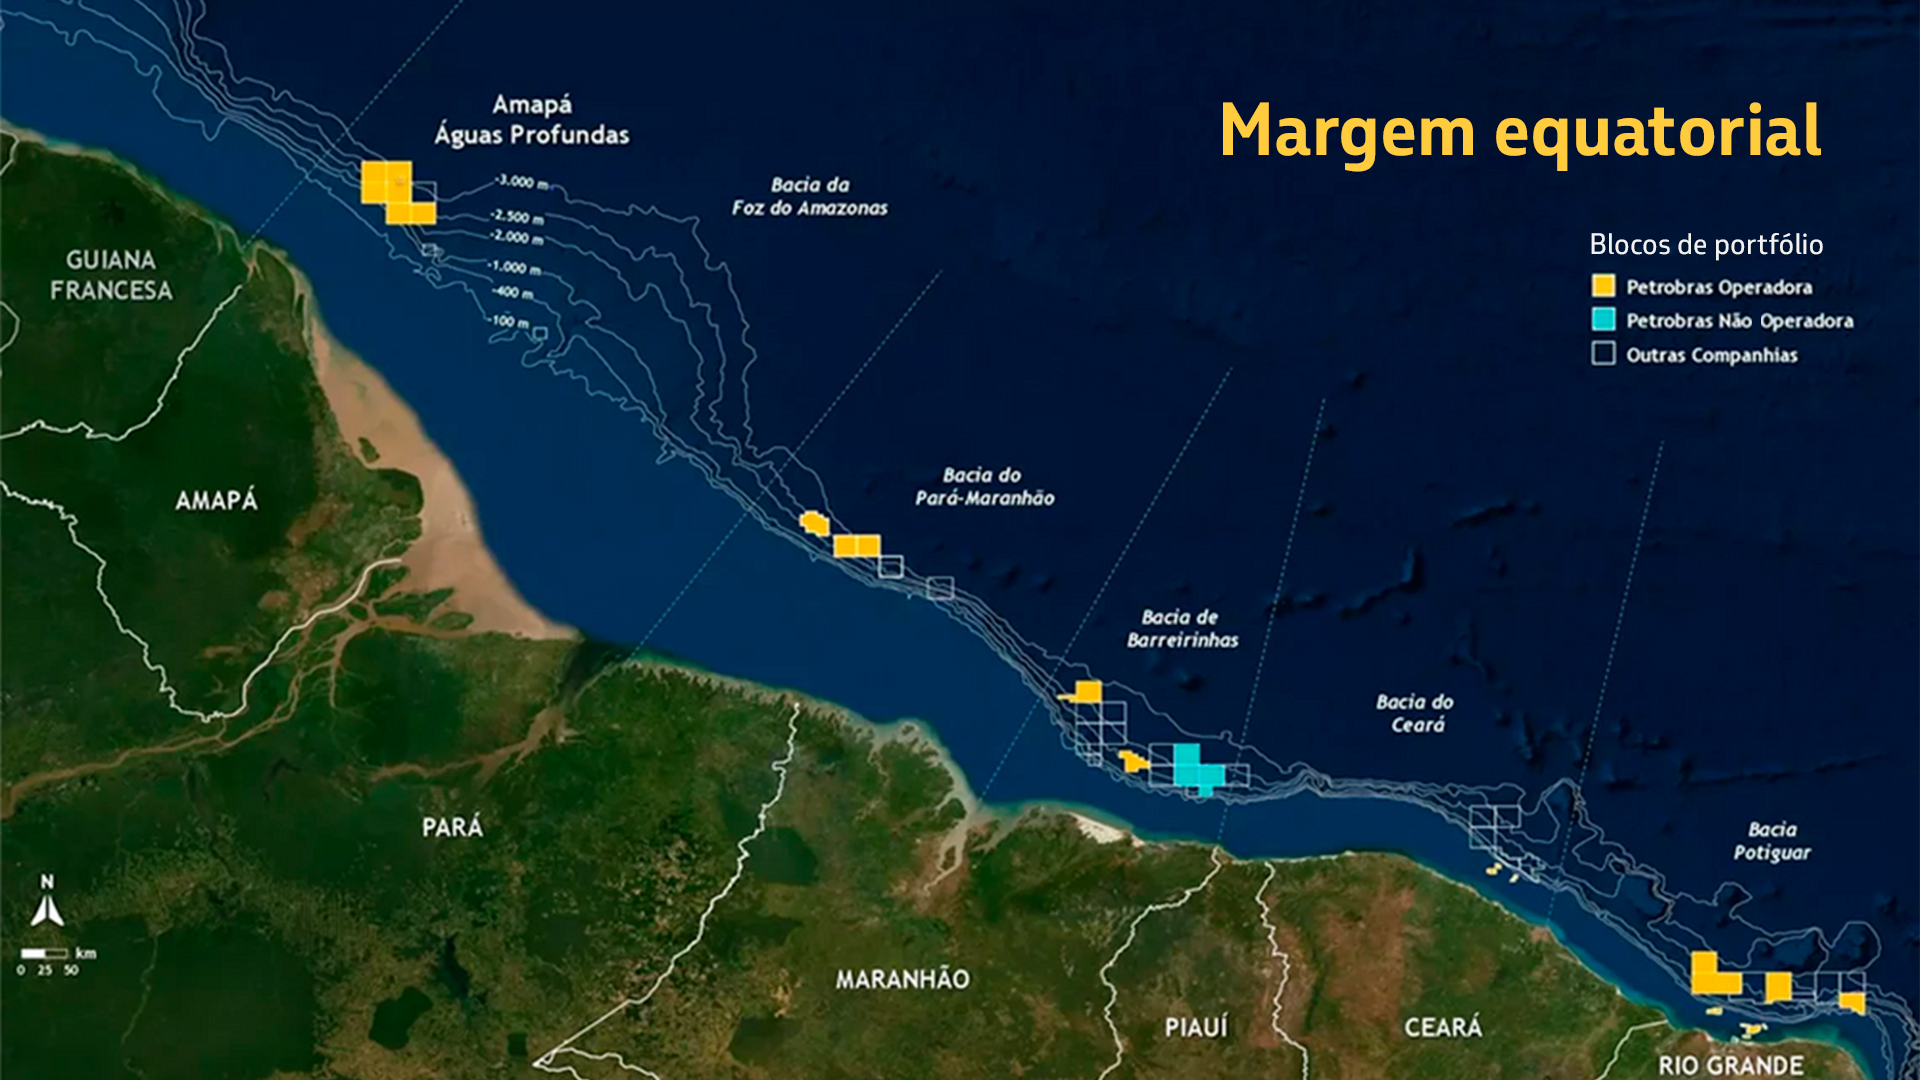 Mapa mostrando a localização da Margem Equatorial e os blocos de portfólio de exploração.